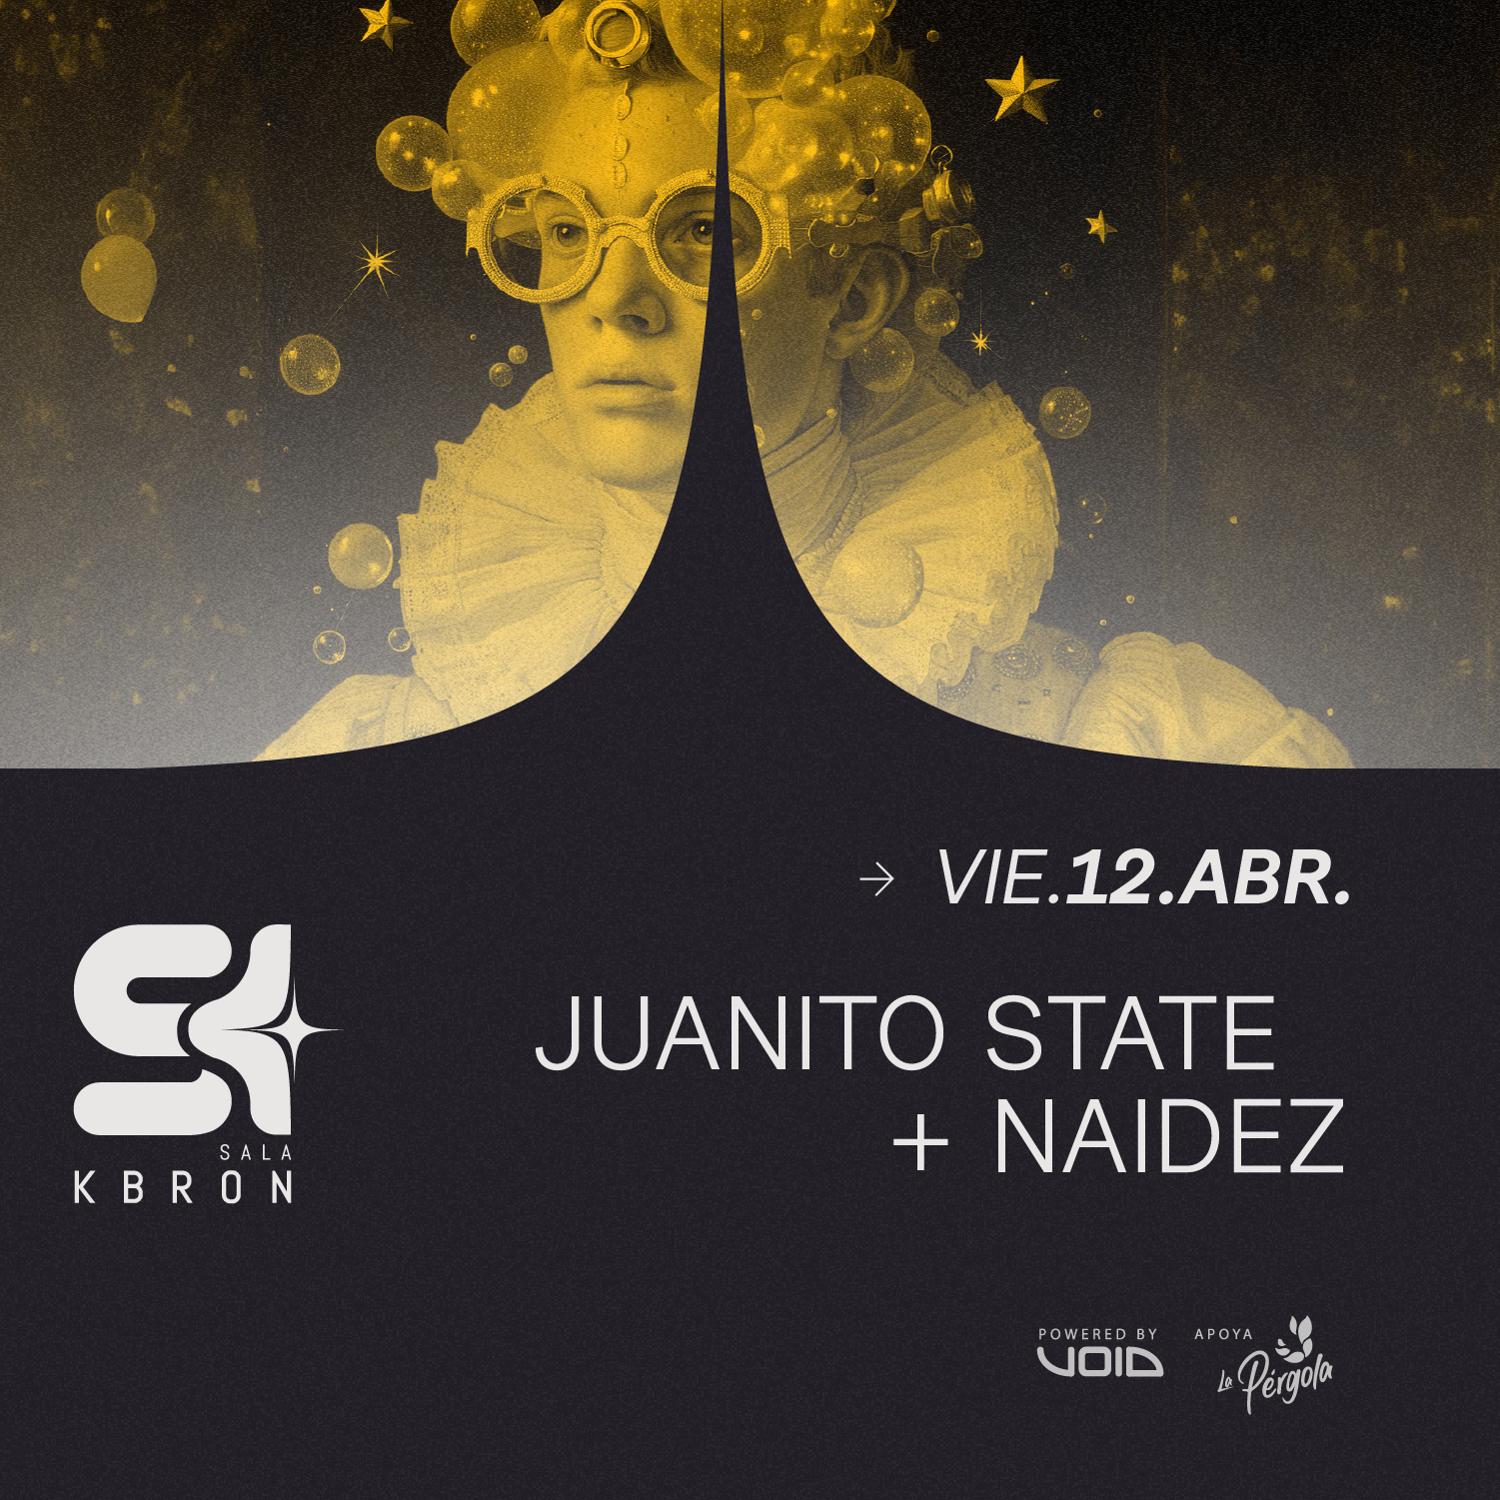 Juanito State + Naidez